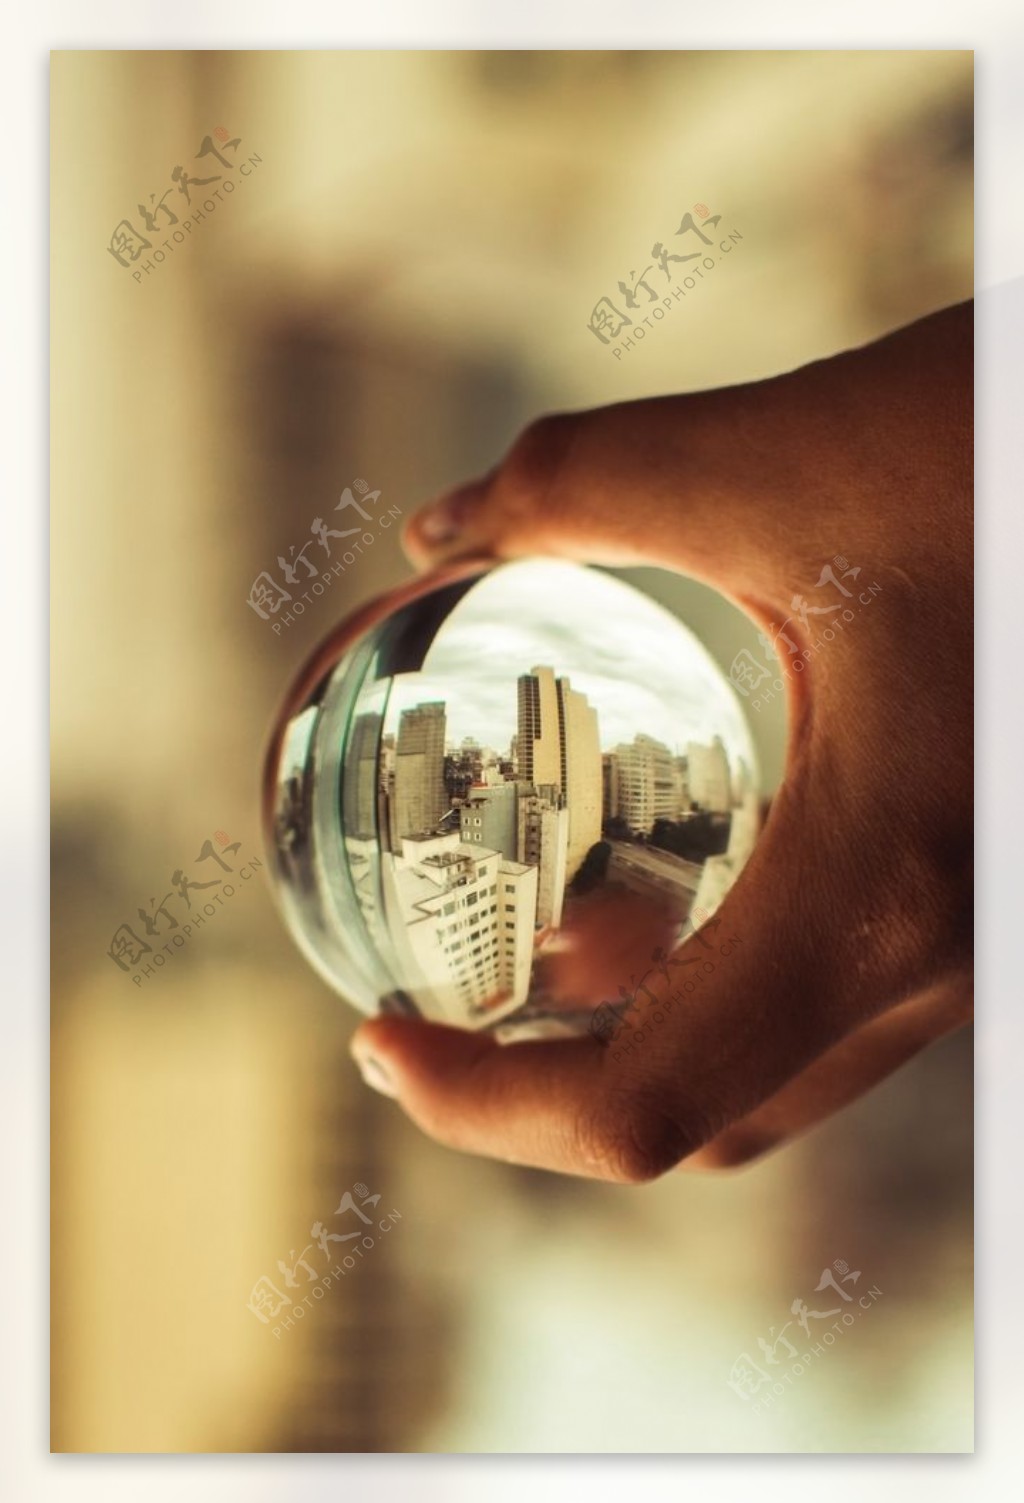 水晶球图片